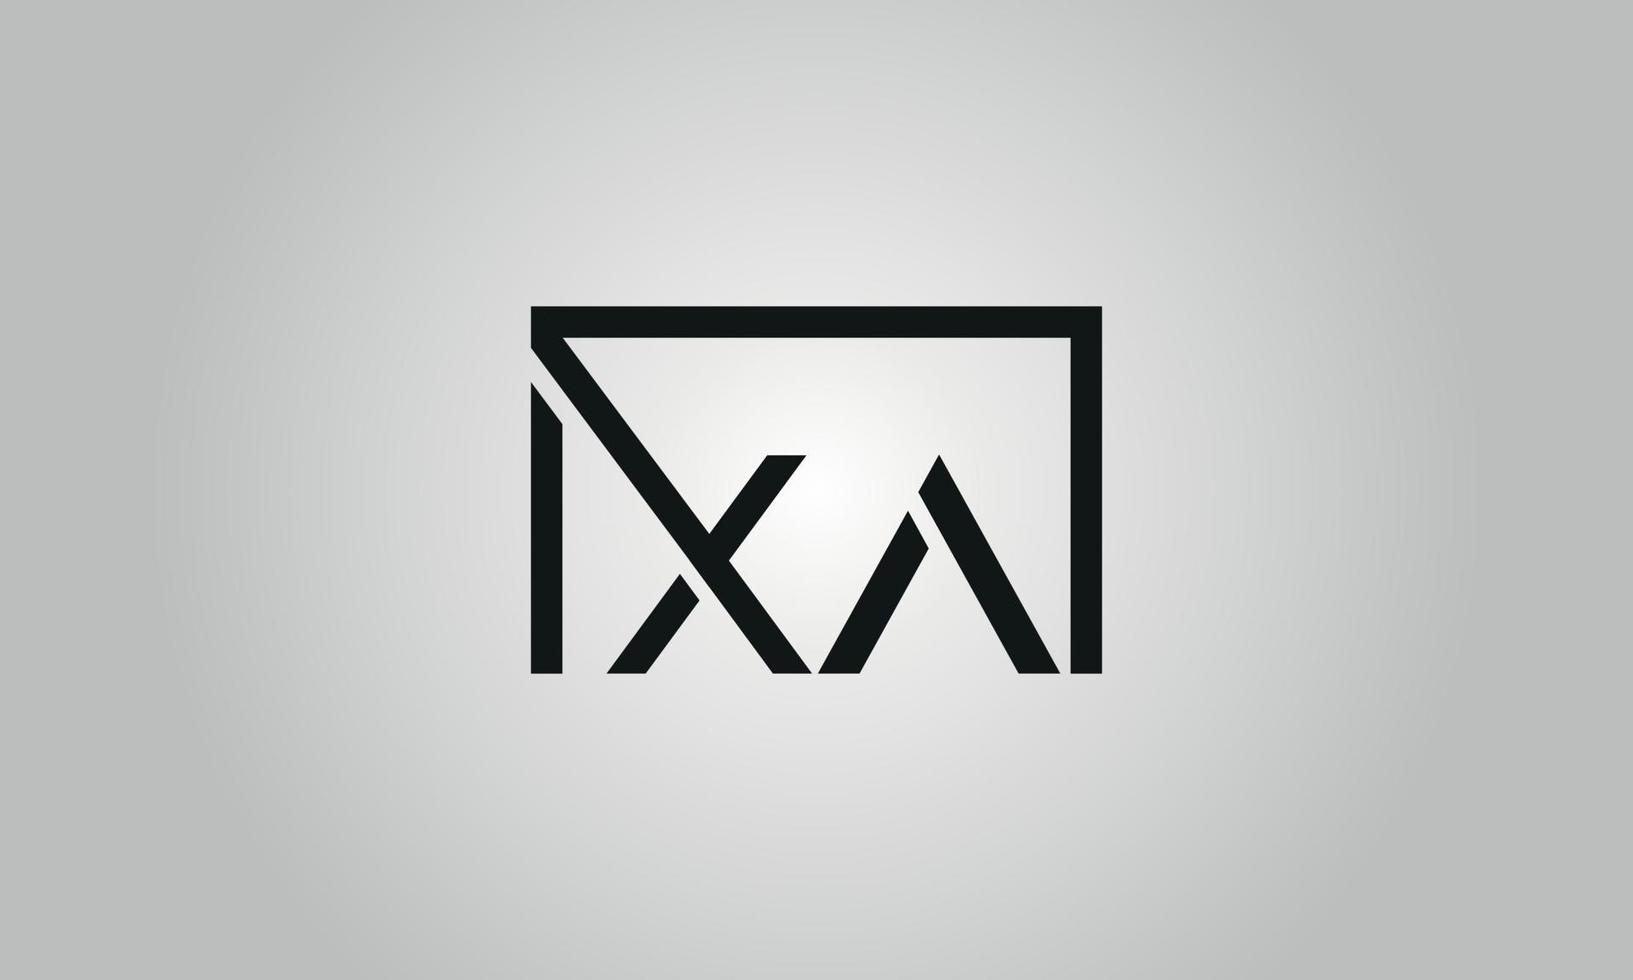 buchstabe xa logo design. xa-Logo mit quadratischer Form in schwarzen Farben Vektor kostenlose Vektorvorlage.